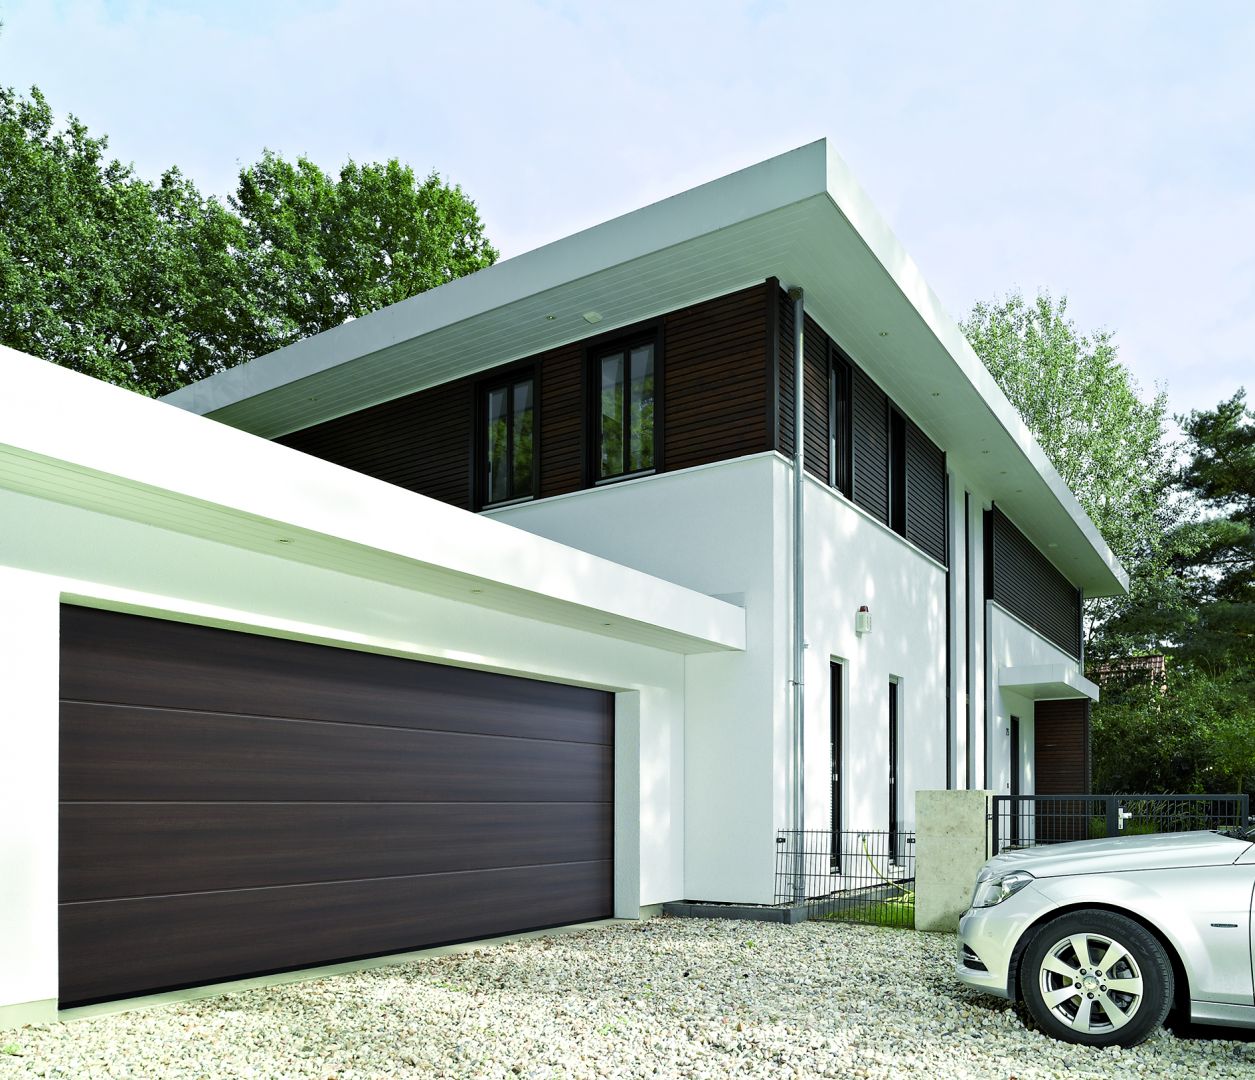 Nowe wzory powierzchni bram garażowych Duragrain to więcej możliwości aranżacji otoczenia domu. Fot. Hörmann